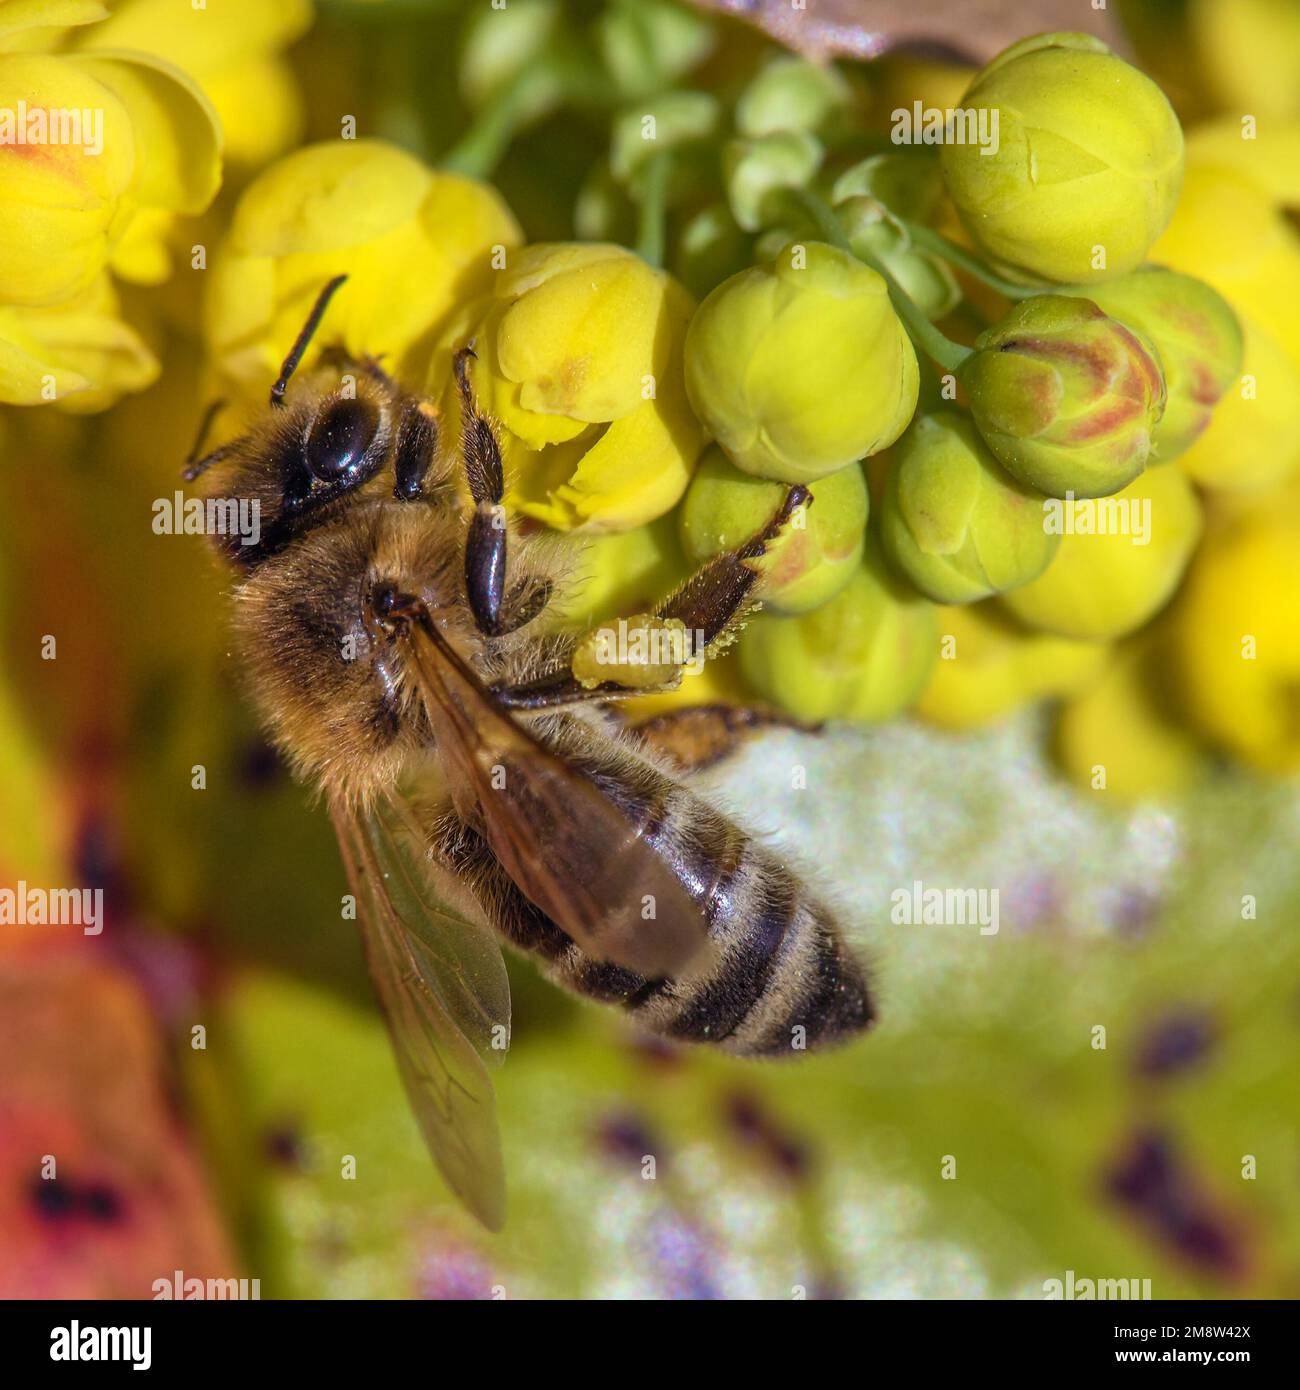 Détail de l'abeille ou de l'abeille en latin APIs mellifera, abeille européenne ou occidentale assise sur la fleur jaune Banque D'Images